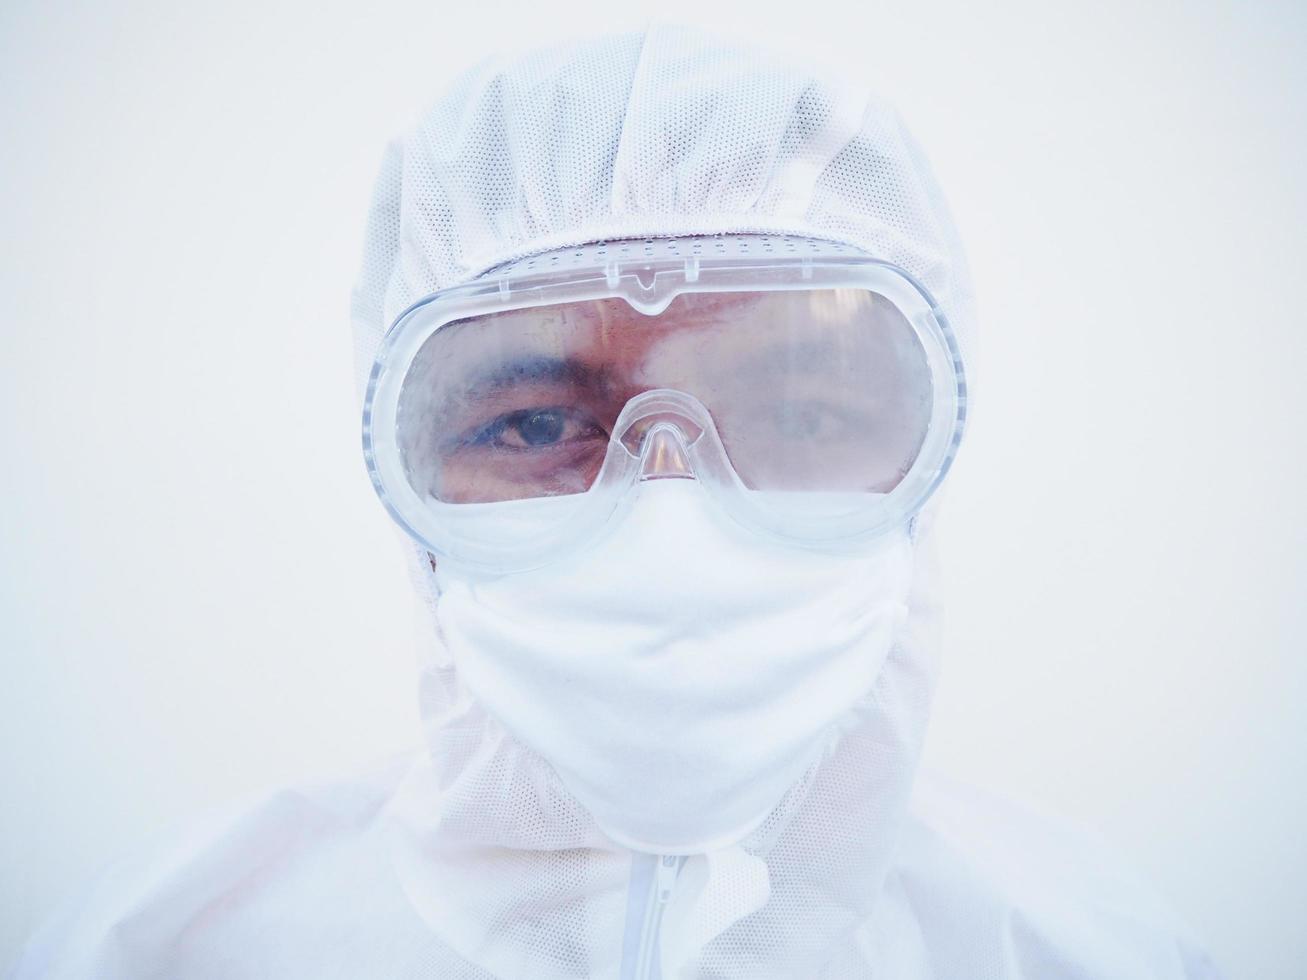 closeup de médico masculino asiático ou cientista em uniforme de suíte de EPI. coronavírus ou covid-19 conceito isolado fundo branco foto